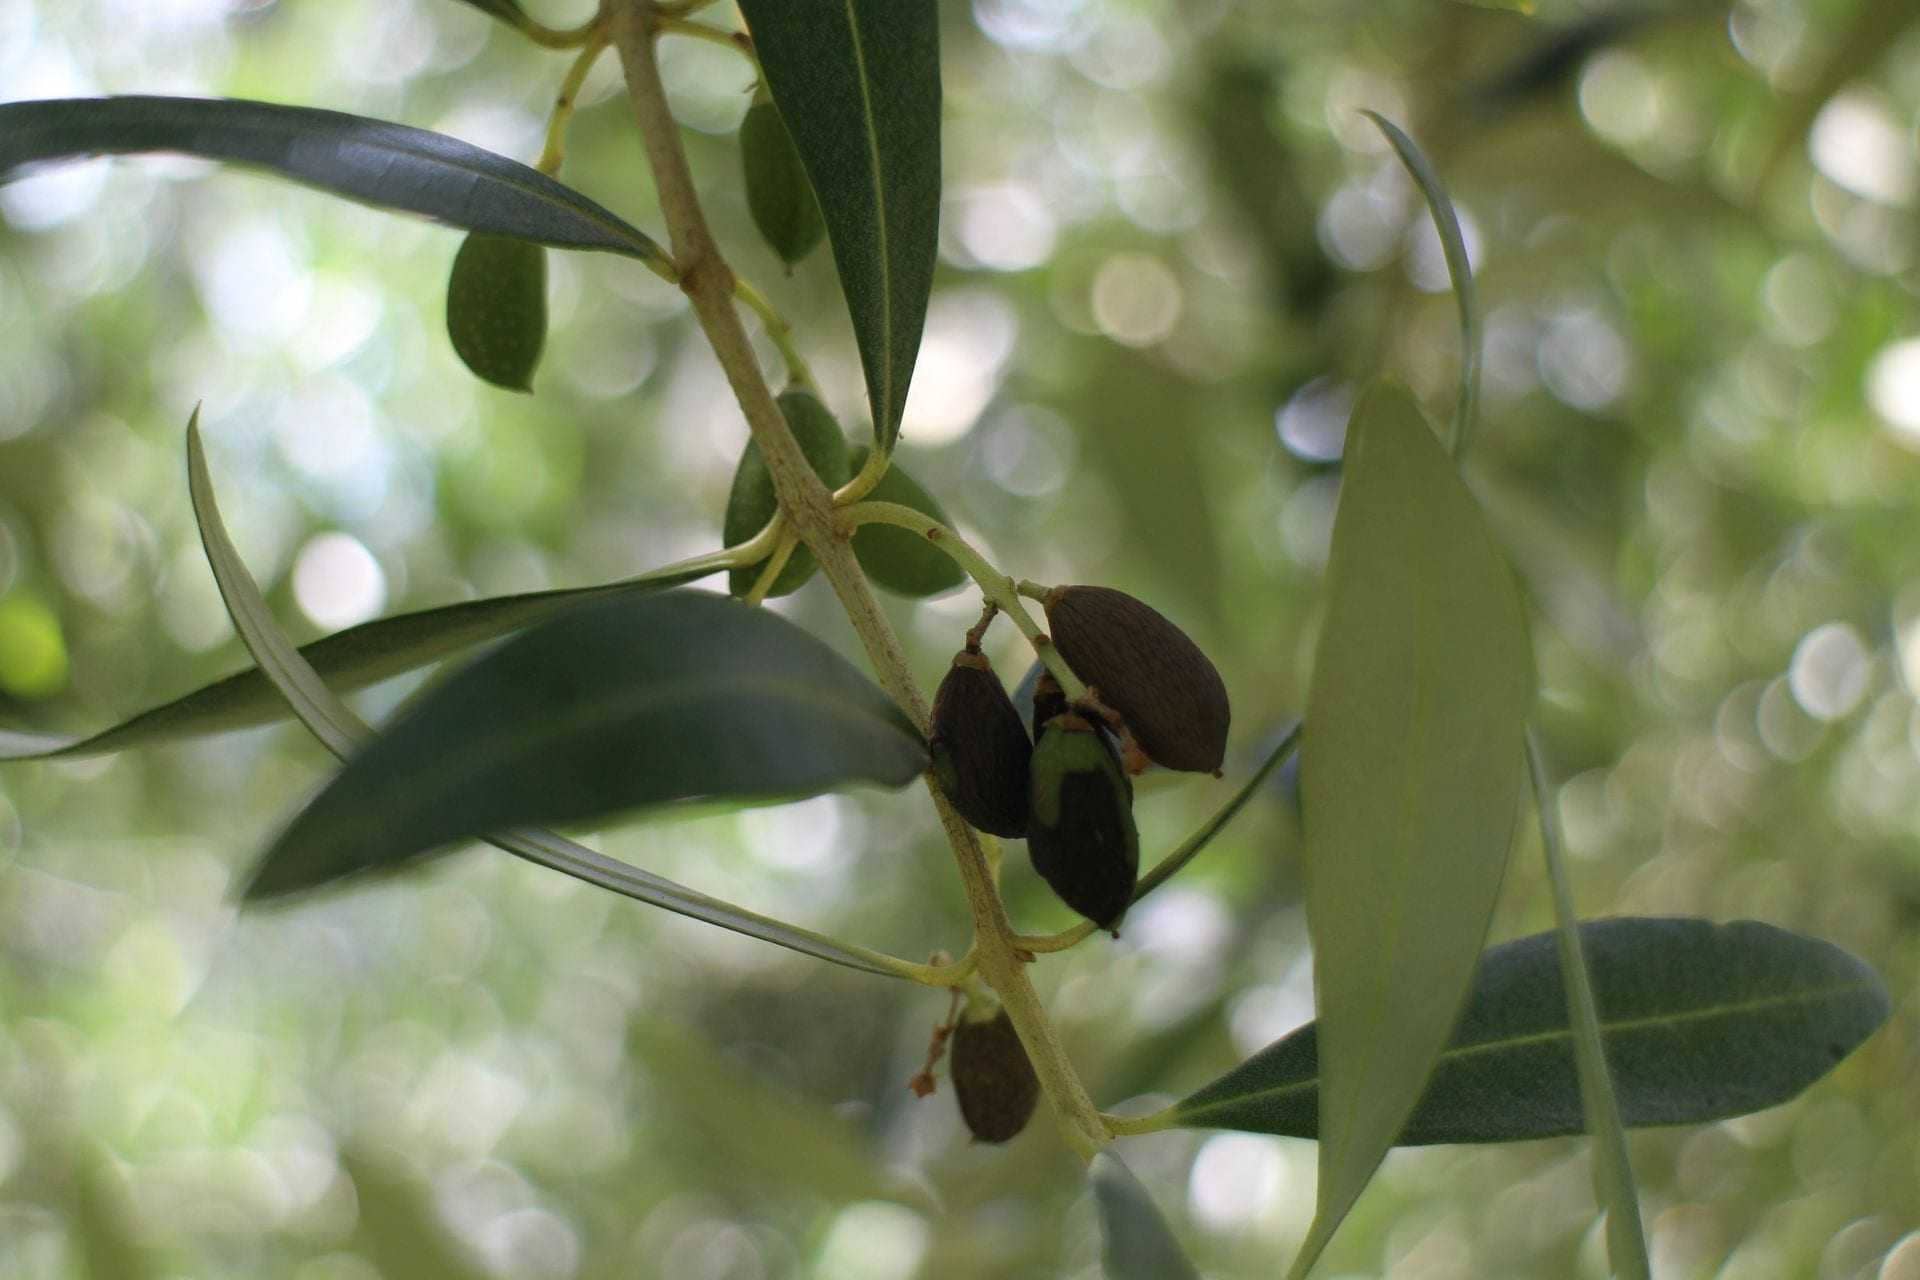 europe-asiatique-bug-peut-etre-cause-de-chute-verte-dans-les-oliviers-chercheurs-trouver-l'huile-d'olive-temps